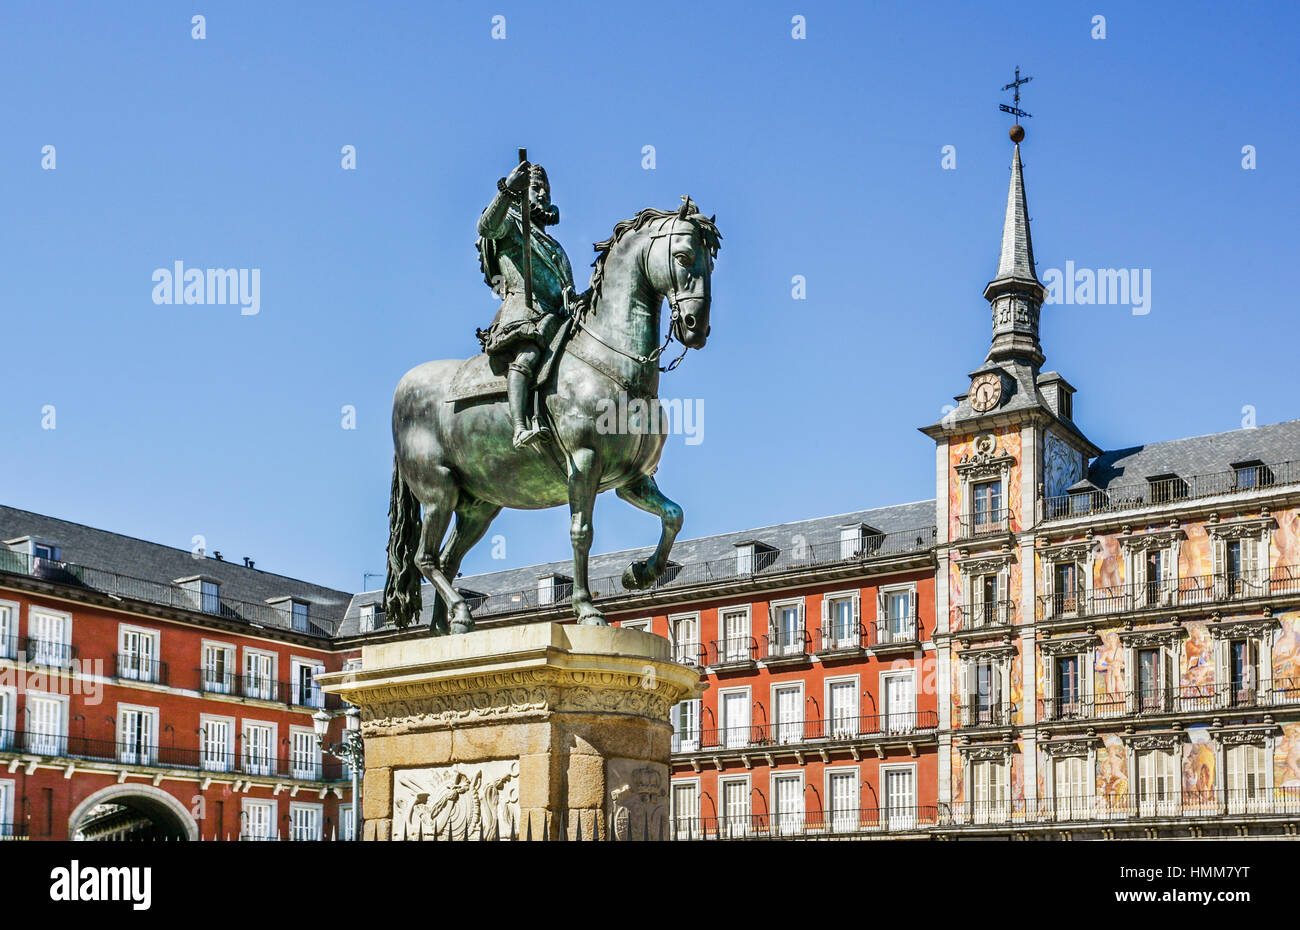 Spain, Madrid, Centro, Plaza Mayor, view of Felipe III memorial and Casa de la Panadería Stock Photo